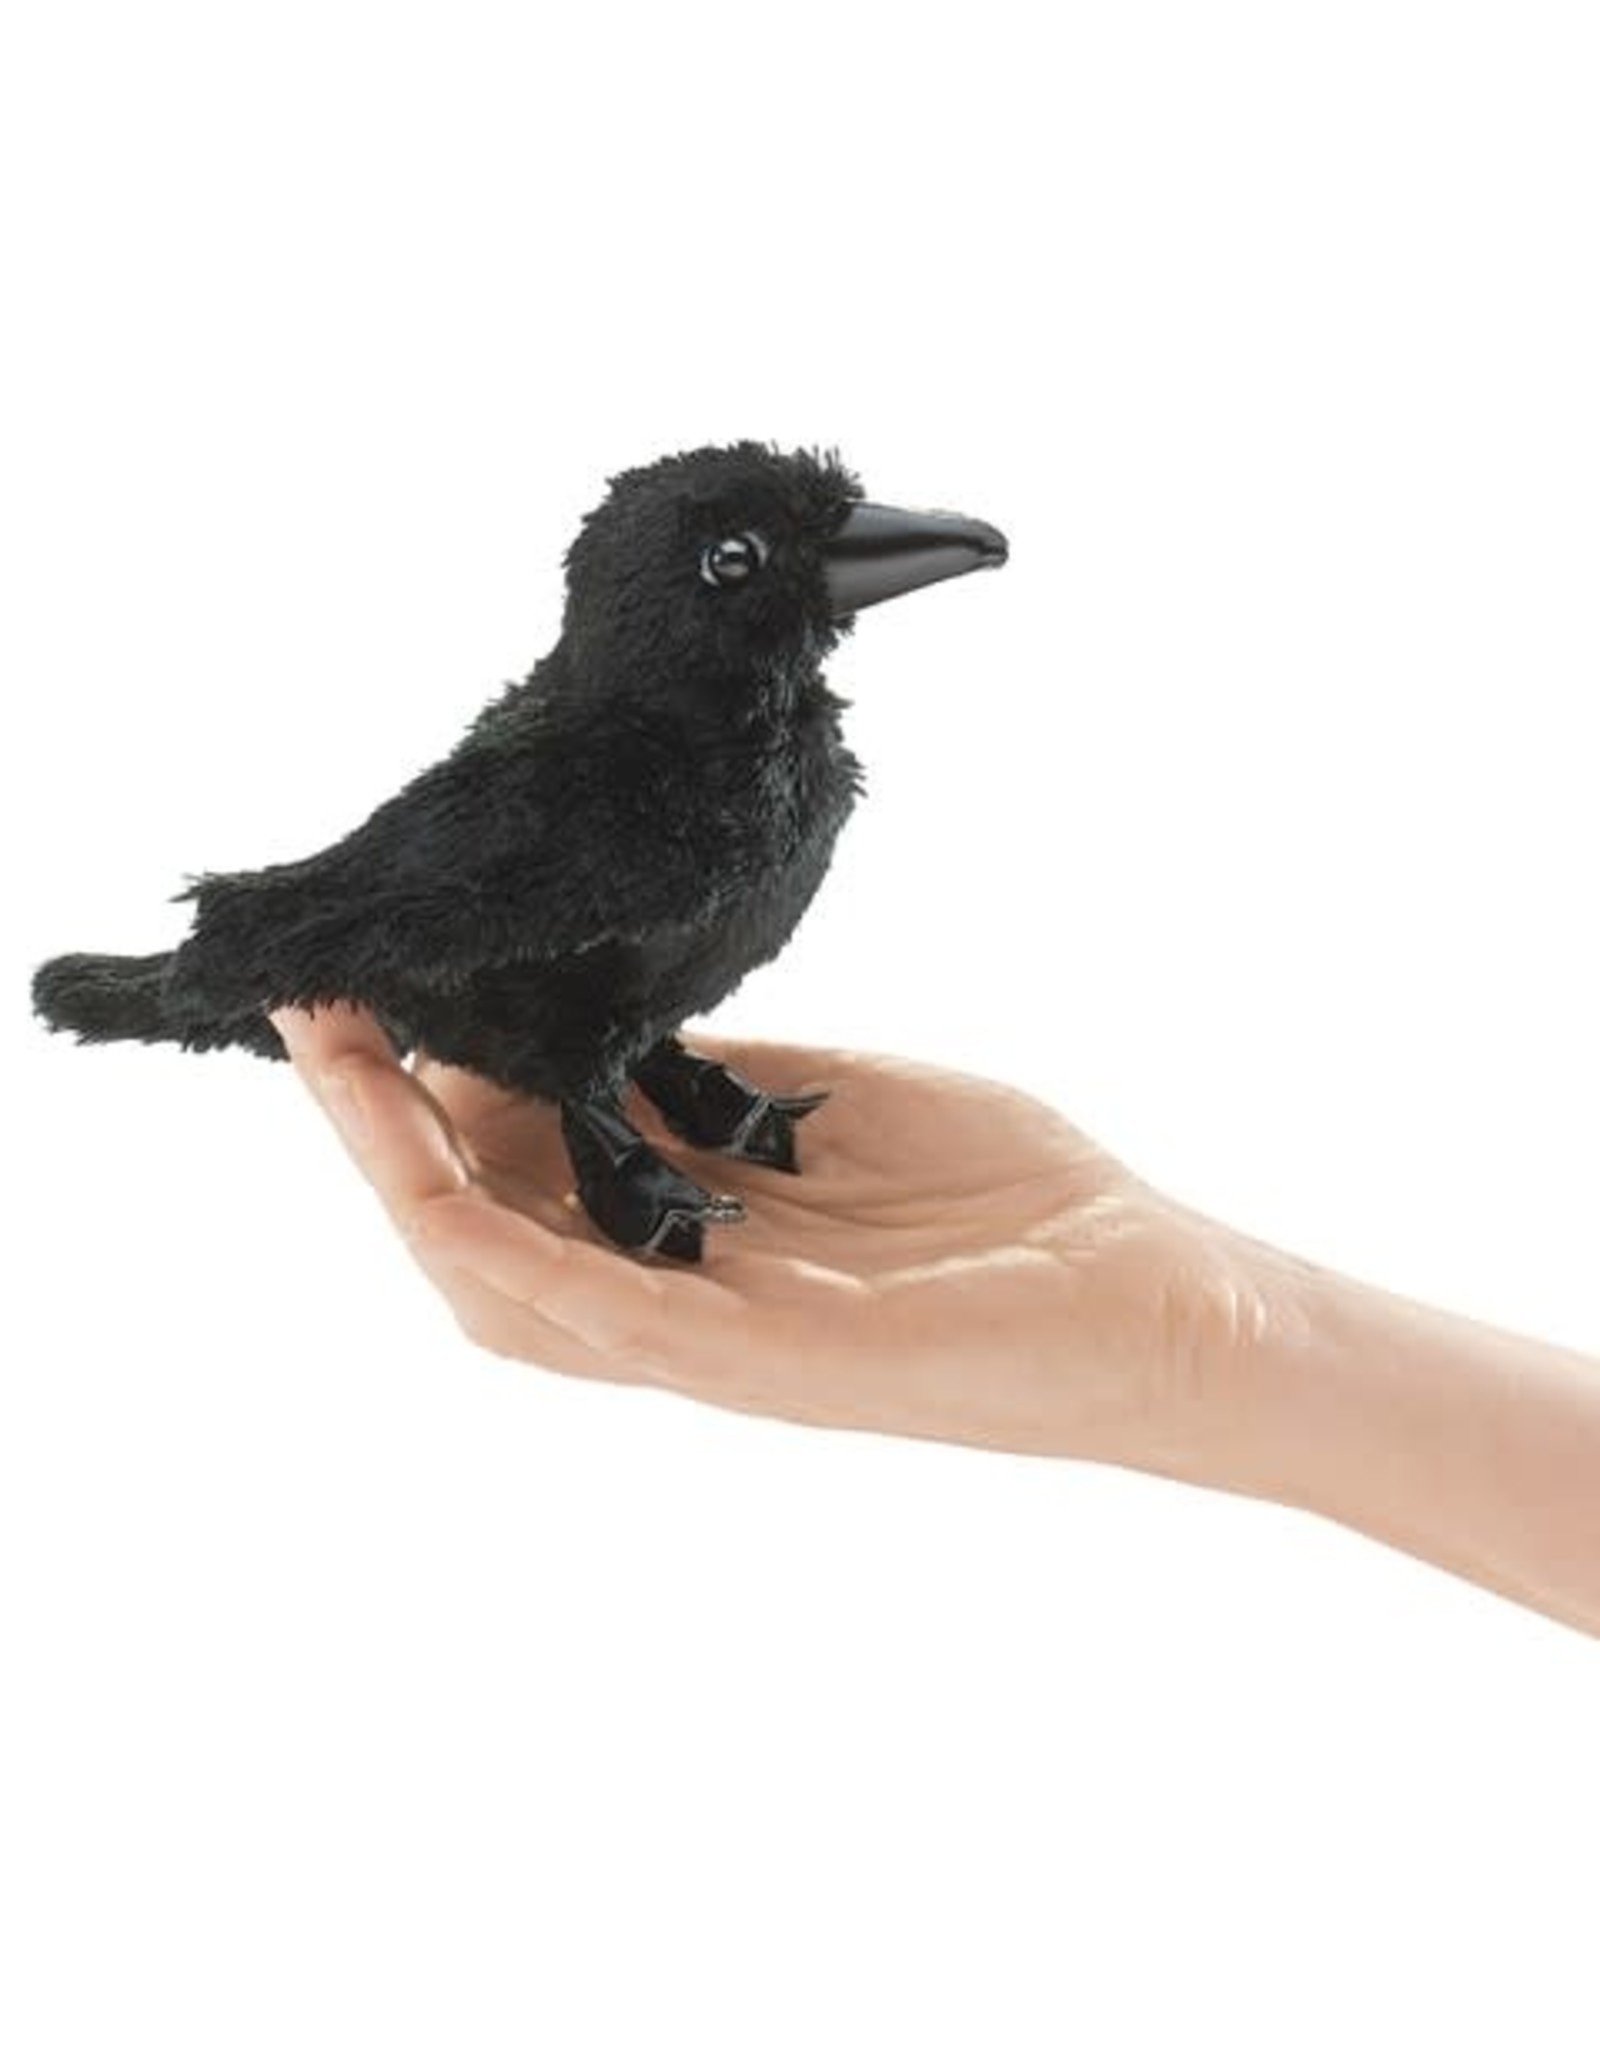 Folkmanis Mini Finger Puppet Raven